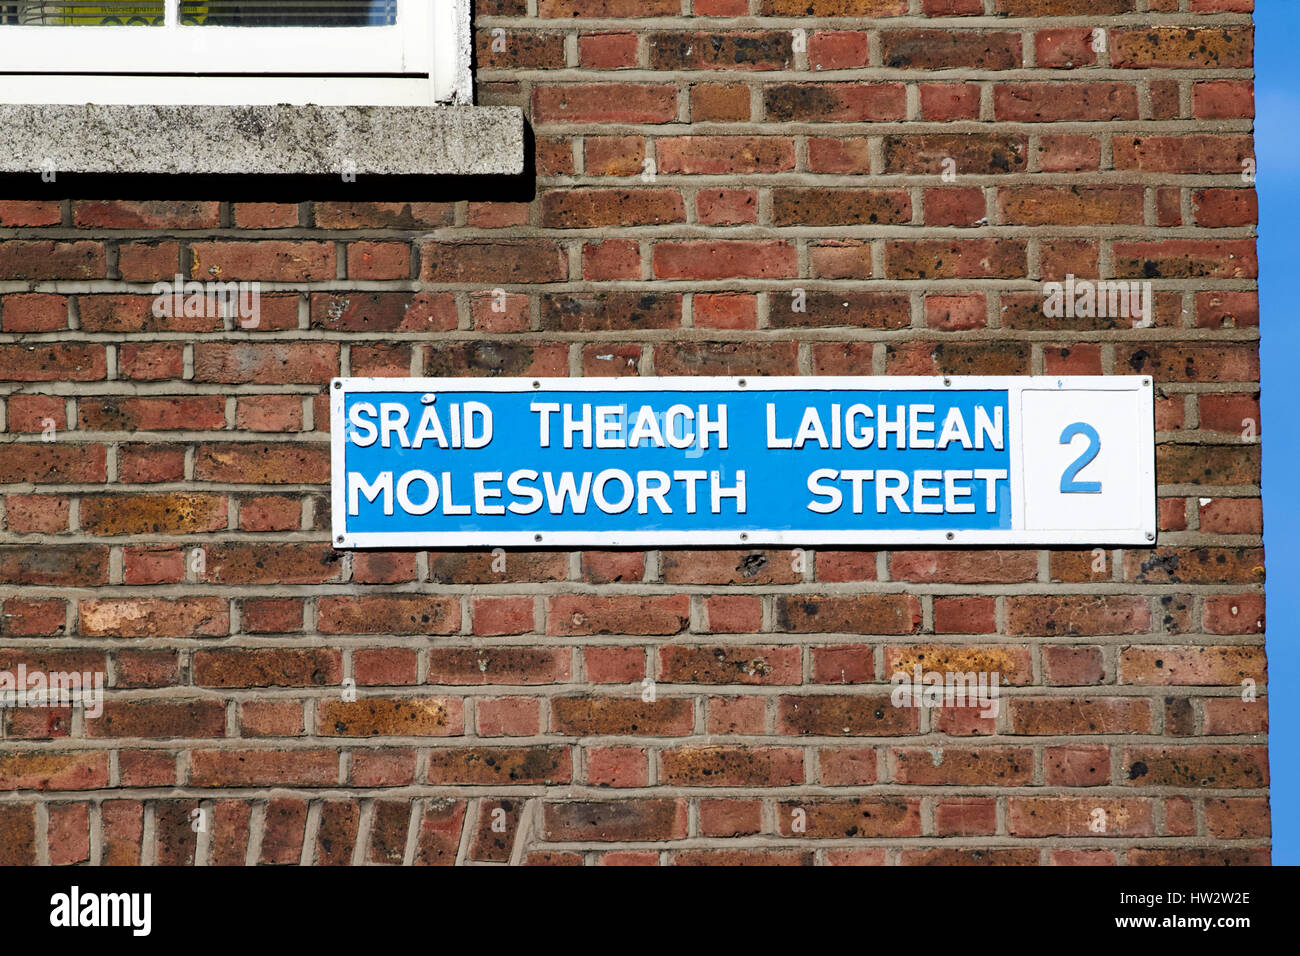 alten blauen und weißen zweisprachiges Straßenschild für Molesworth street auf rotem Backstein Mauer Dublin Irland Stockfoto